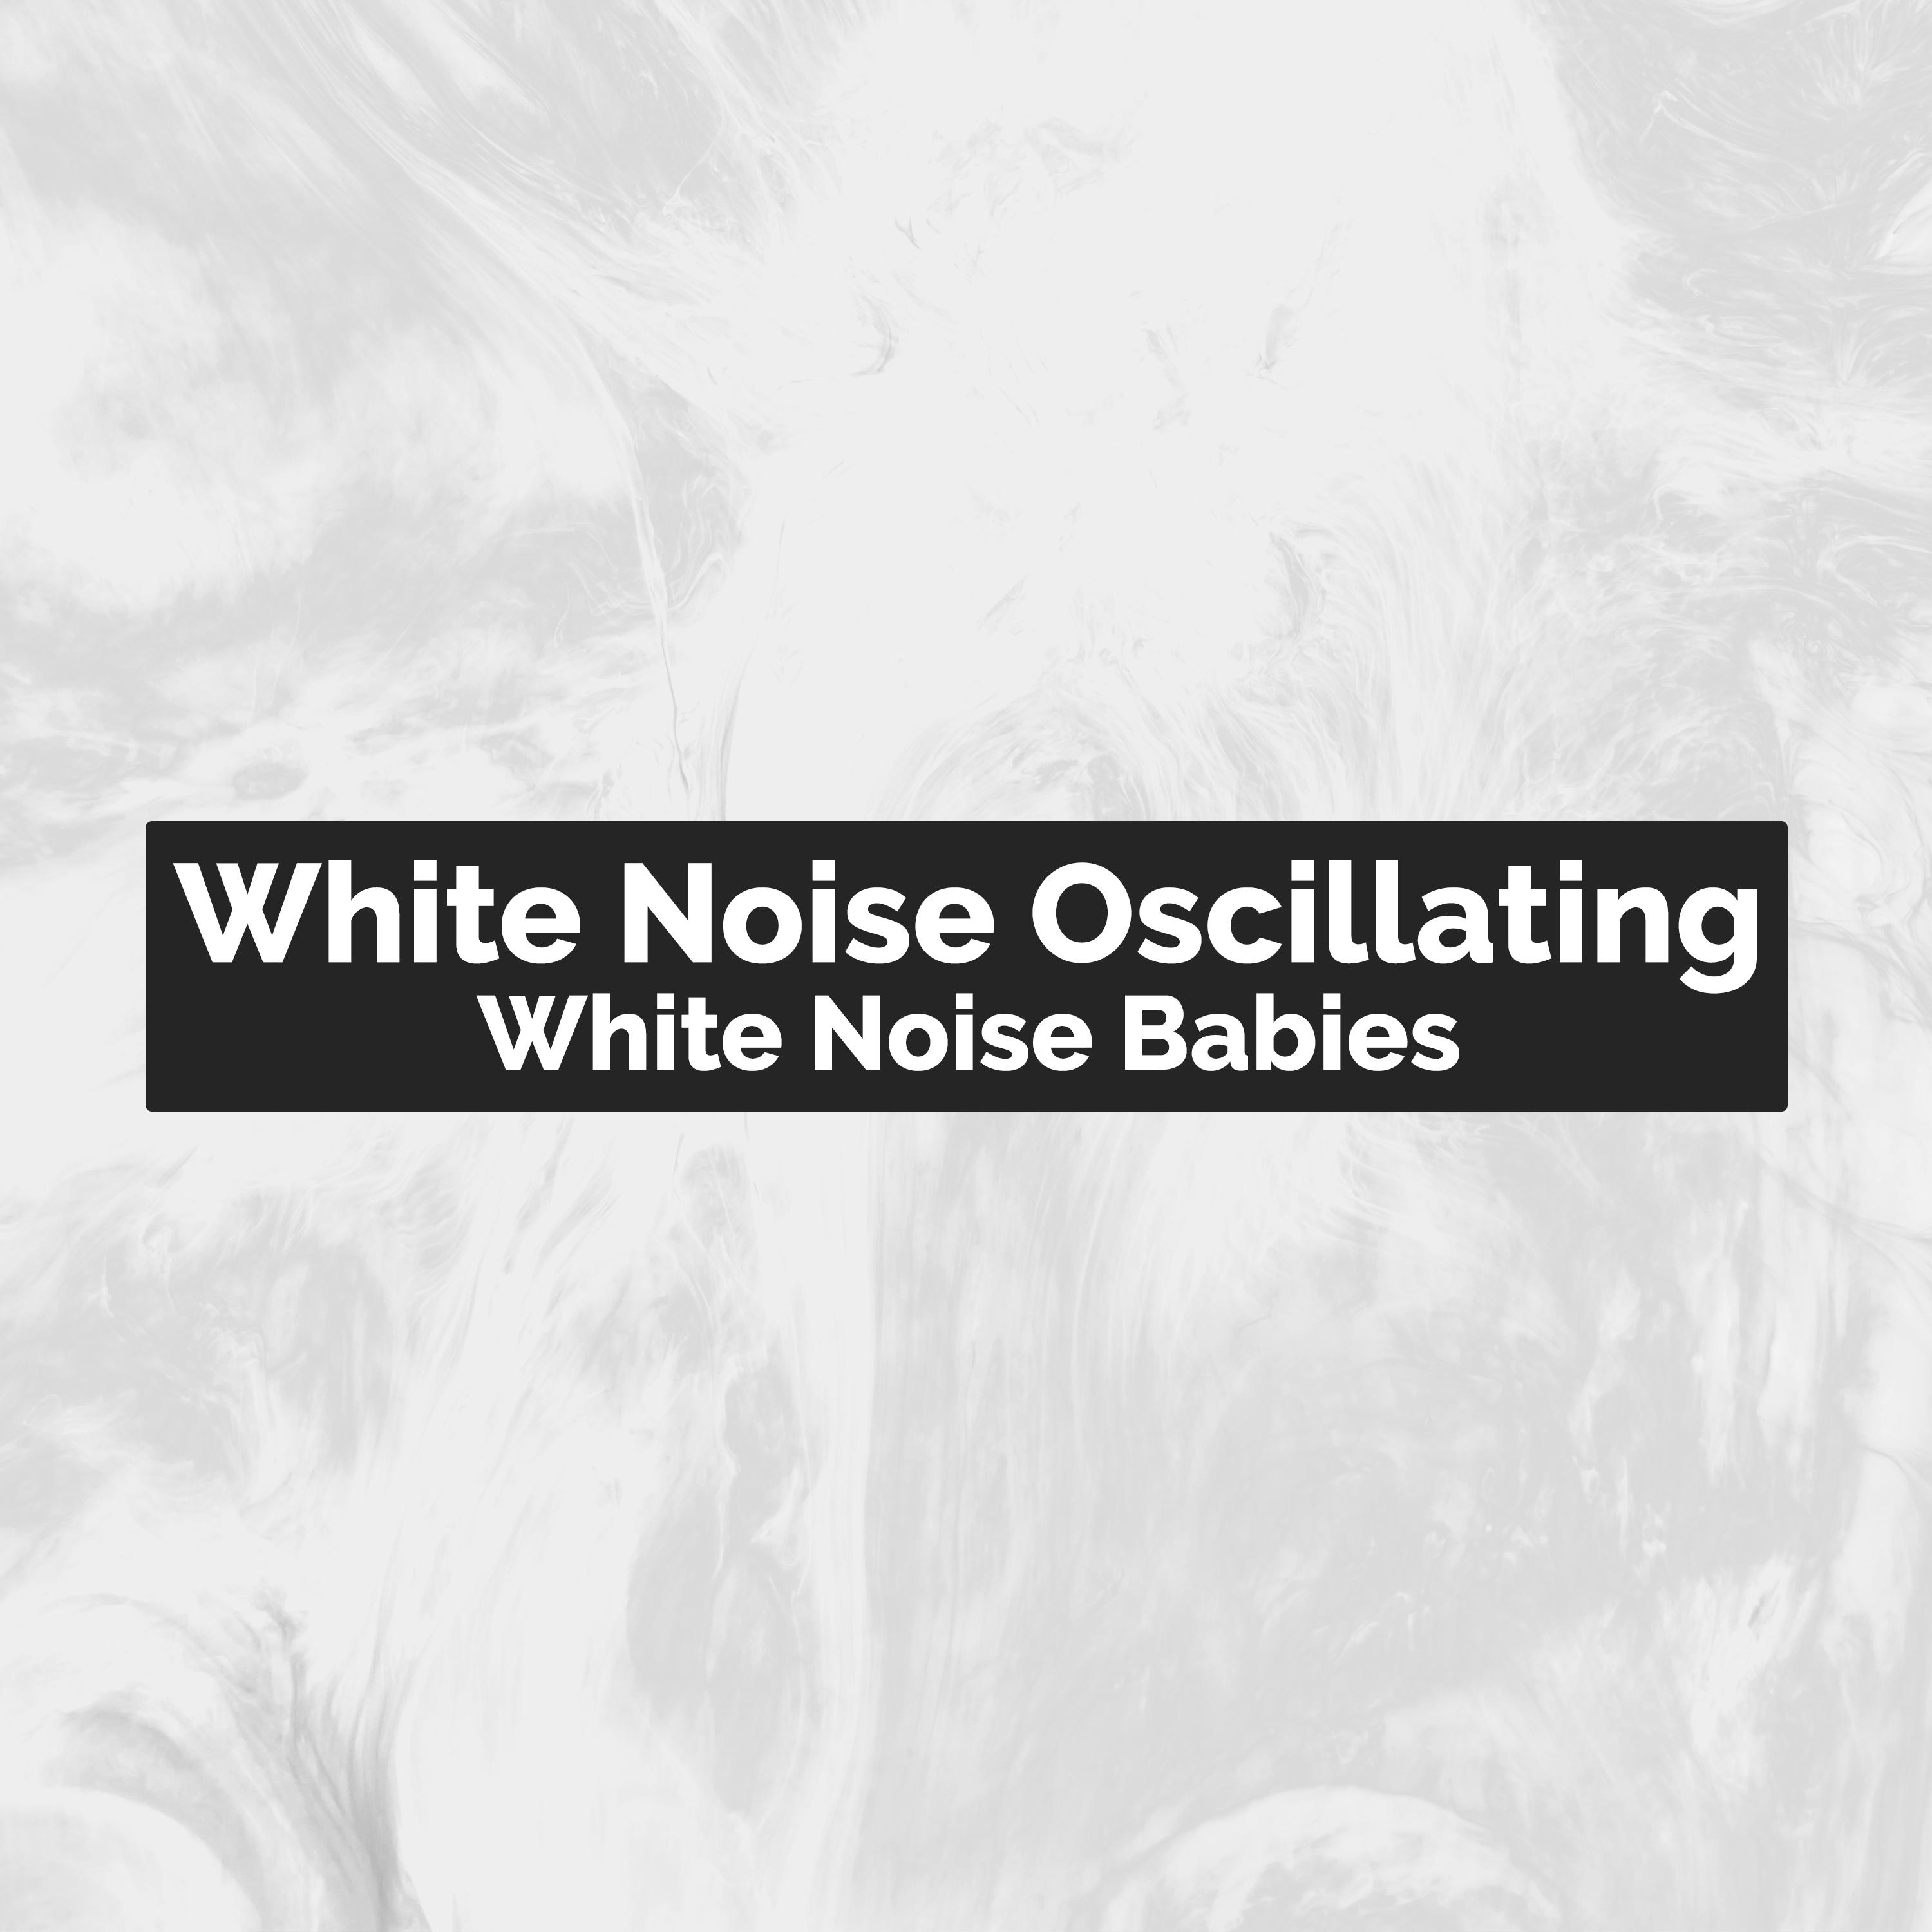 White Noise Oscillating